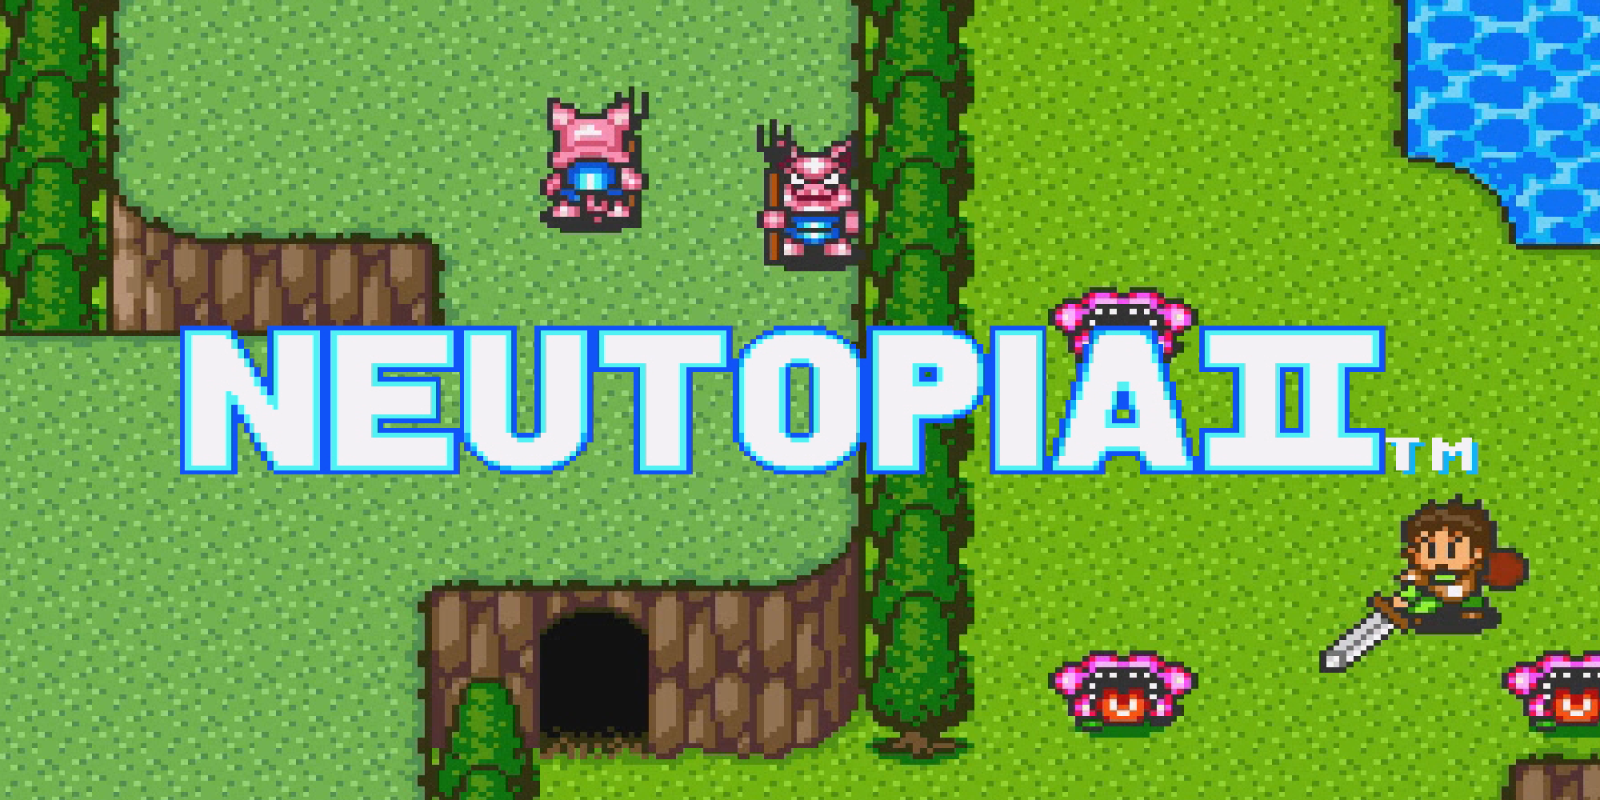 Neutopia II™